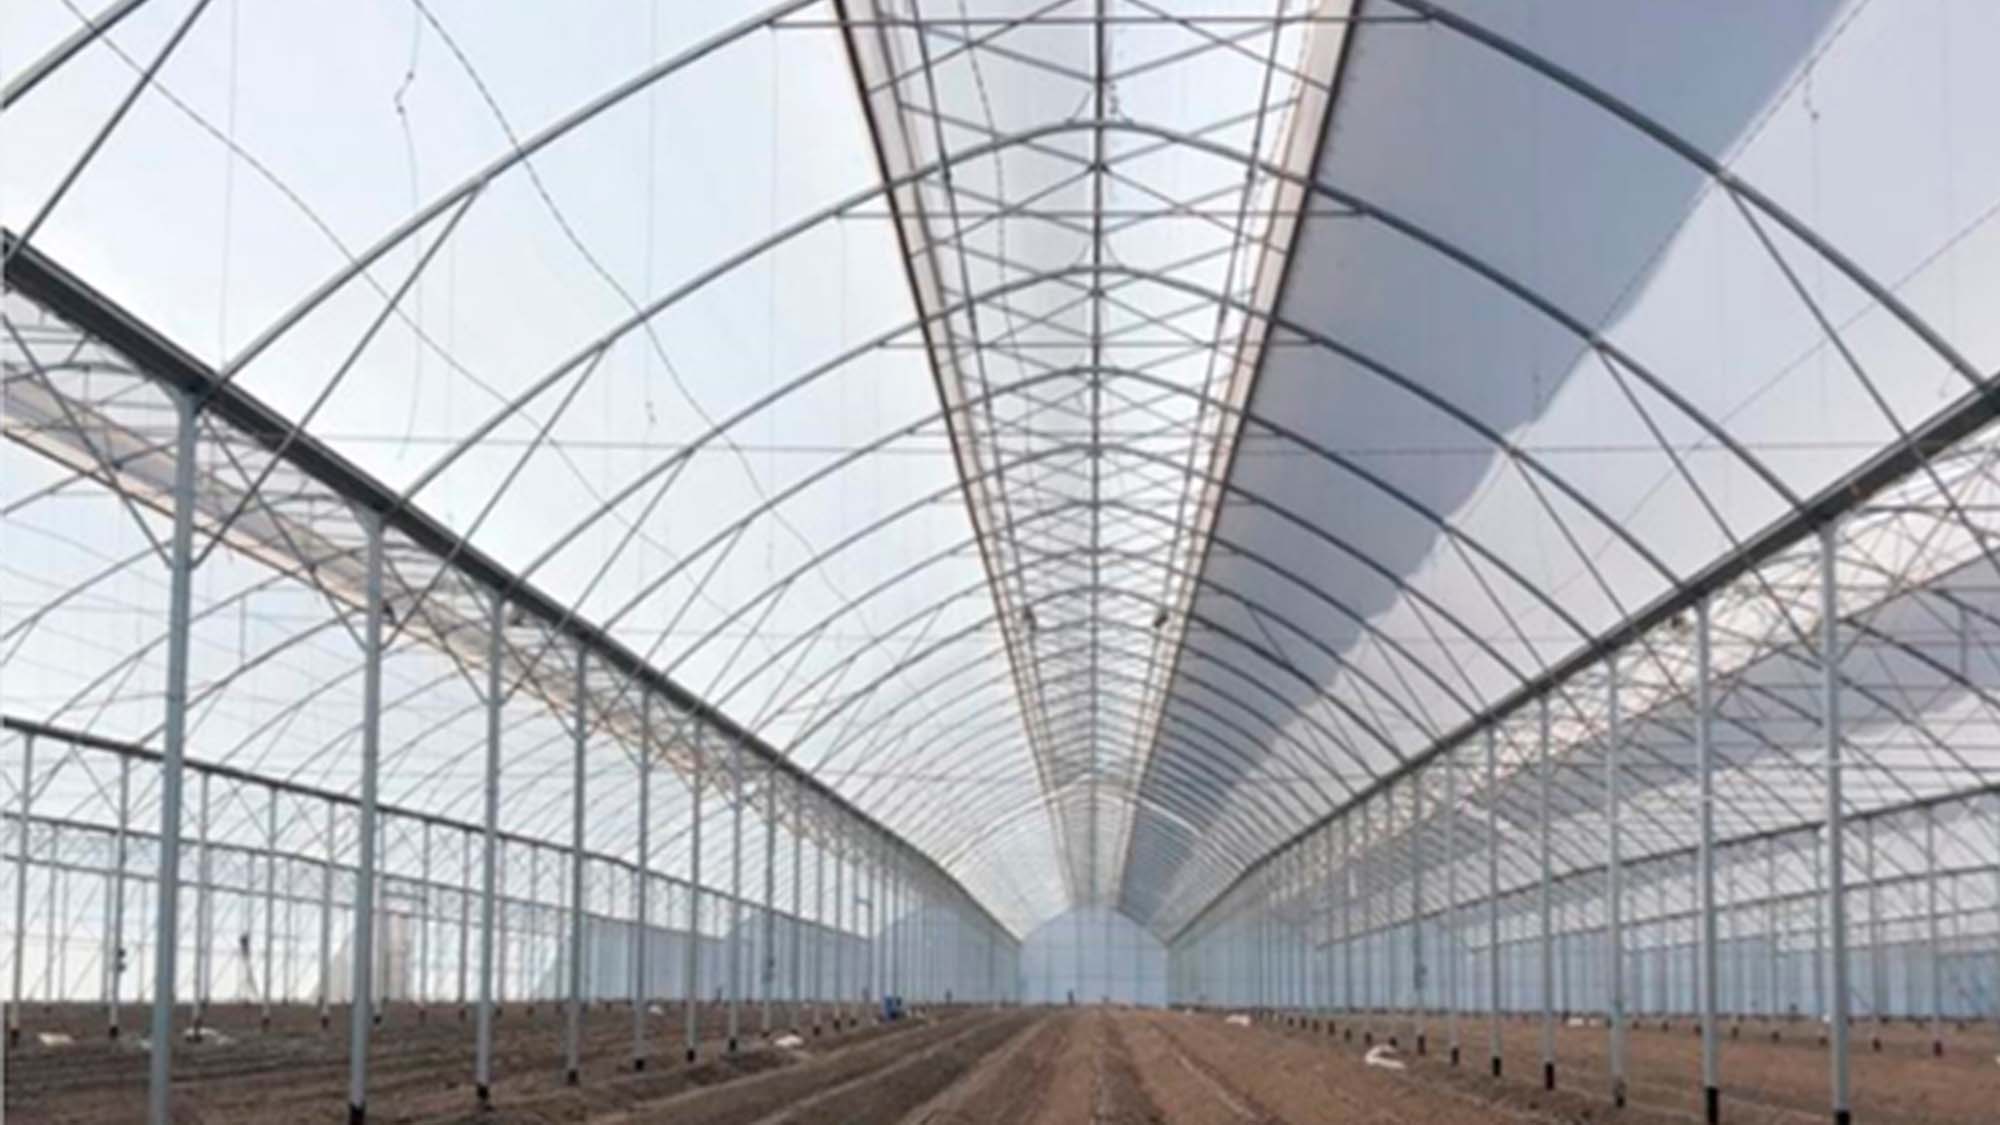 ULMA Agrícola installs greenhouses in Guanajuato (Mexico)